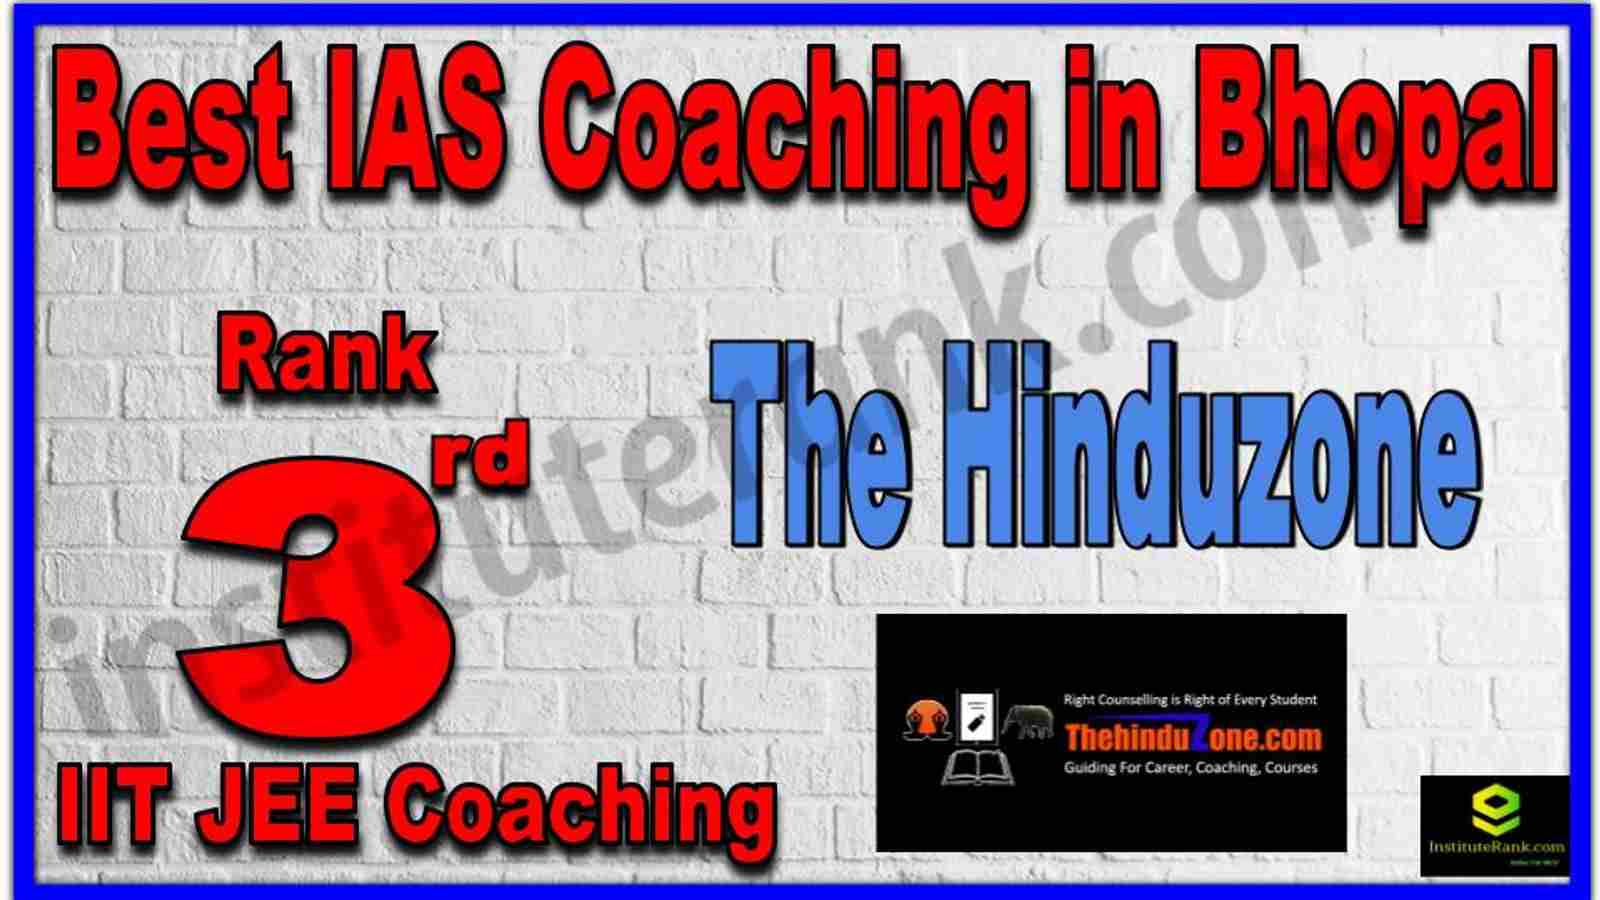 Rank 3rd Best IAS Coaching in Bhopal